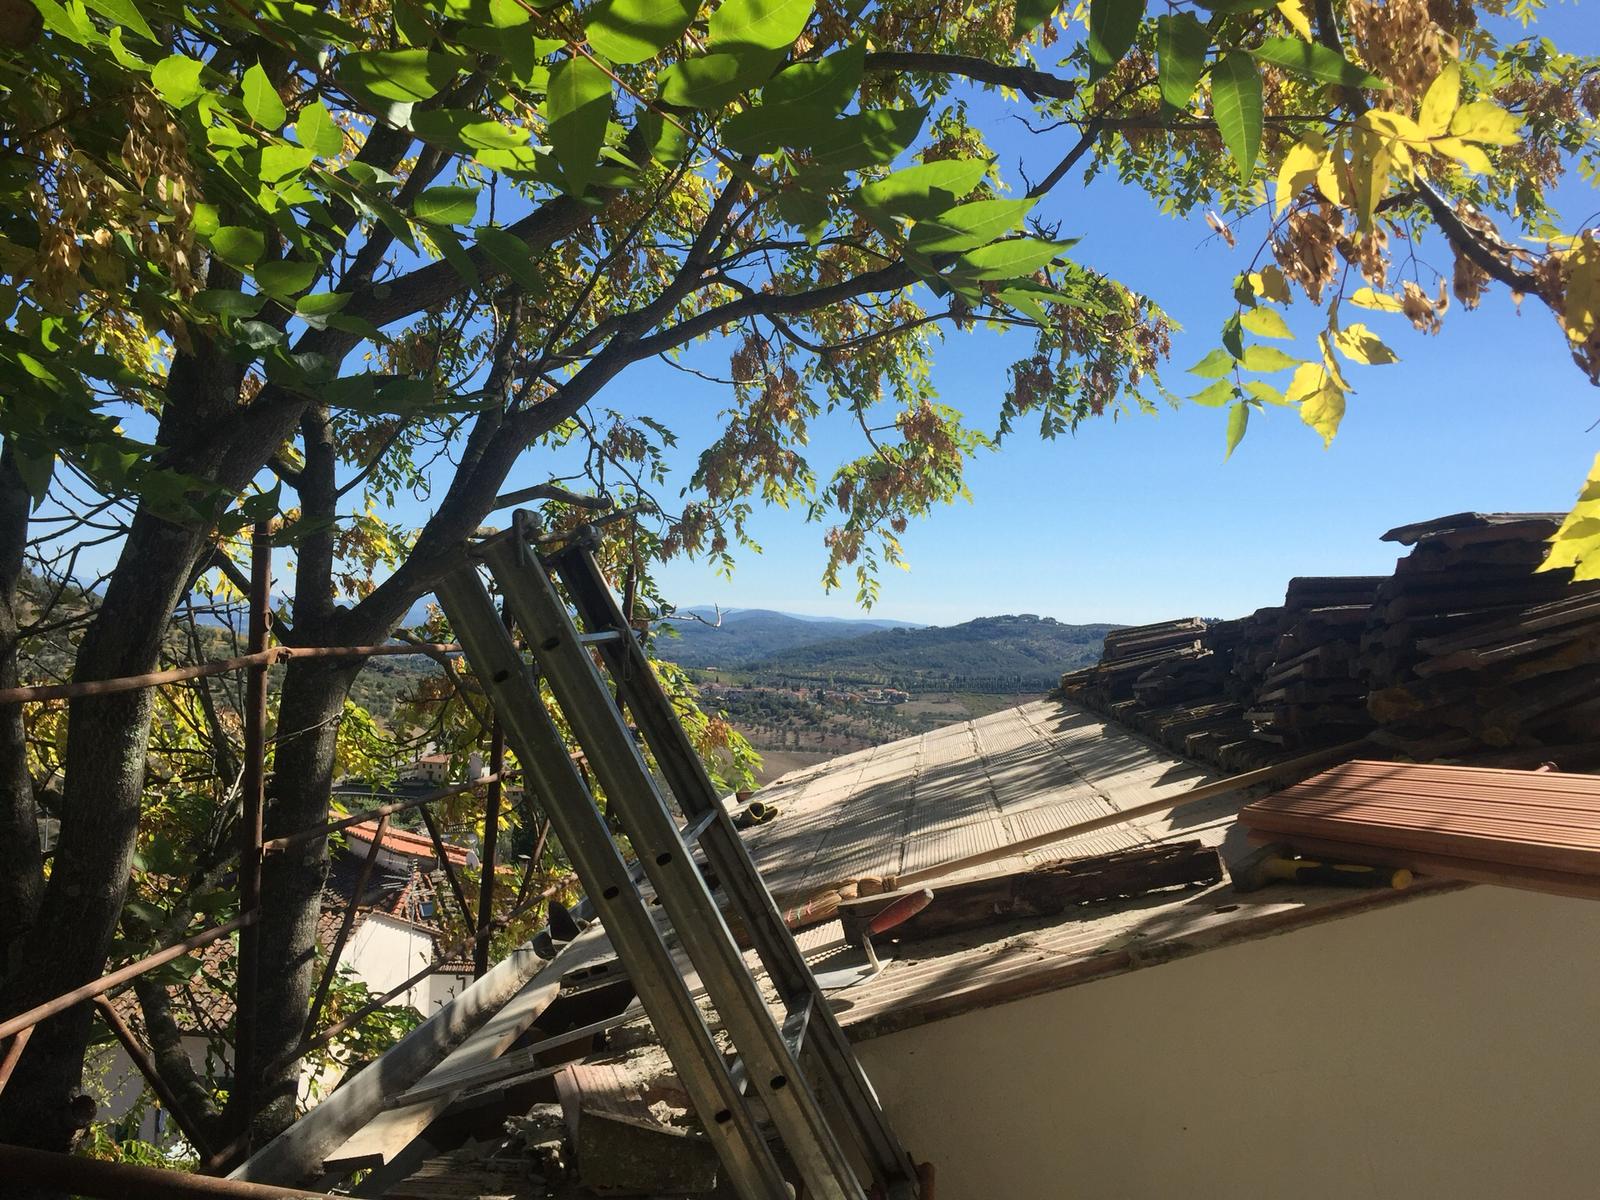  Rifacimento del tetto e di parti d’intonaco: lavori in corso al Centro Moretti 